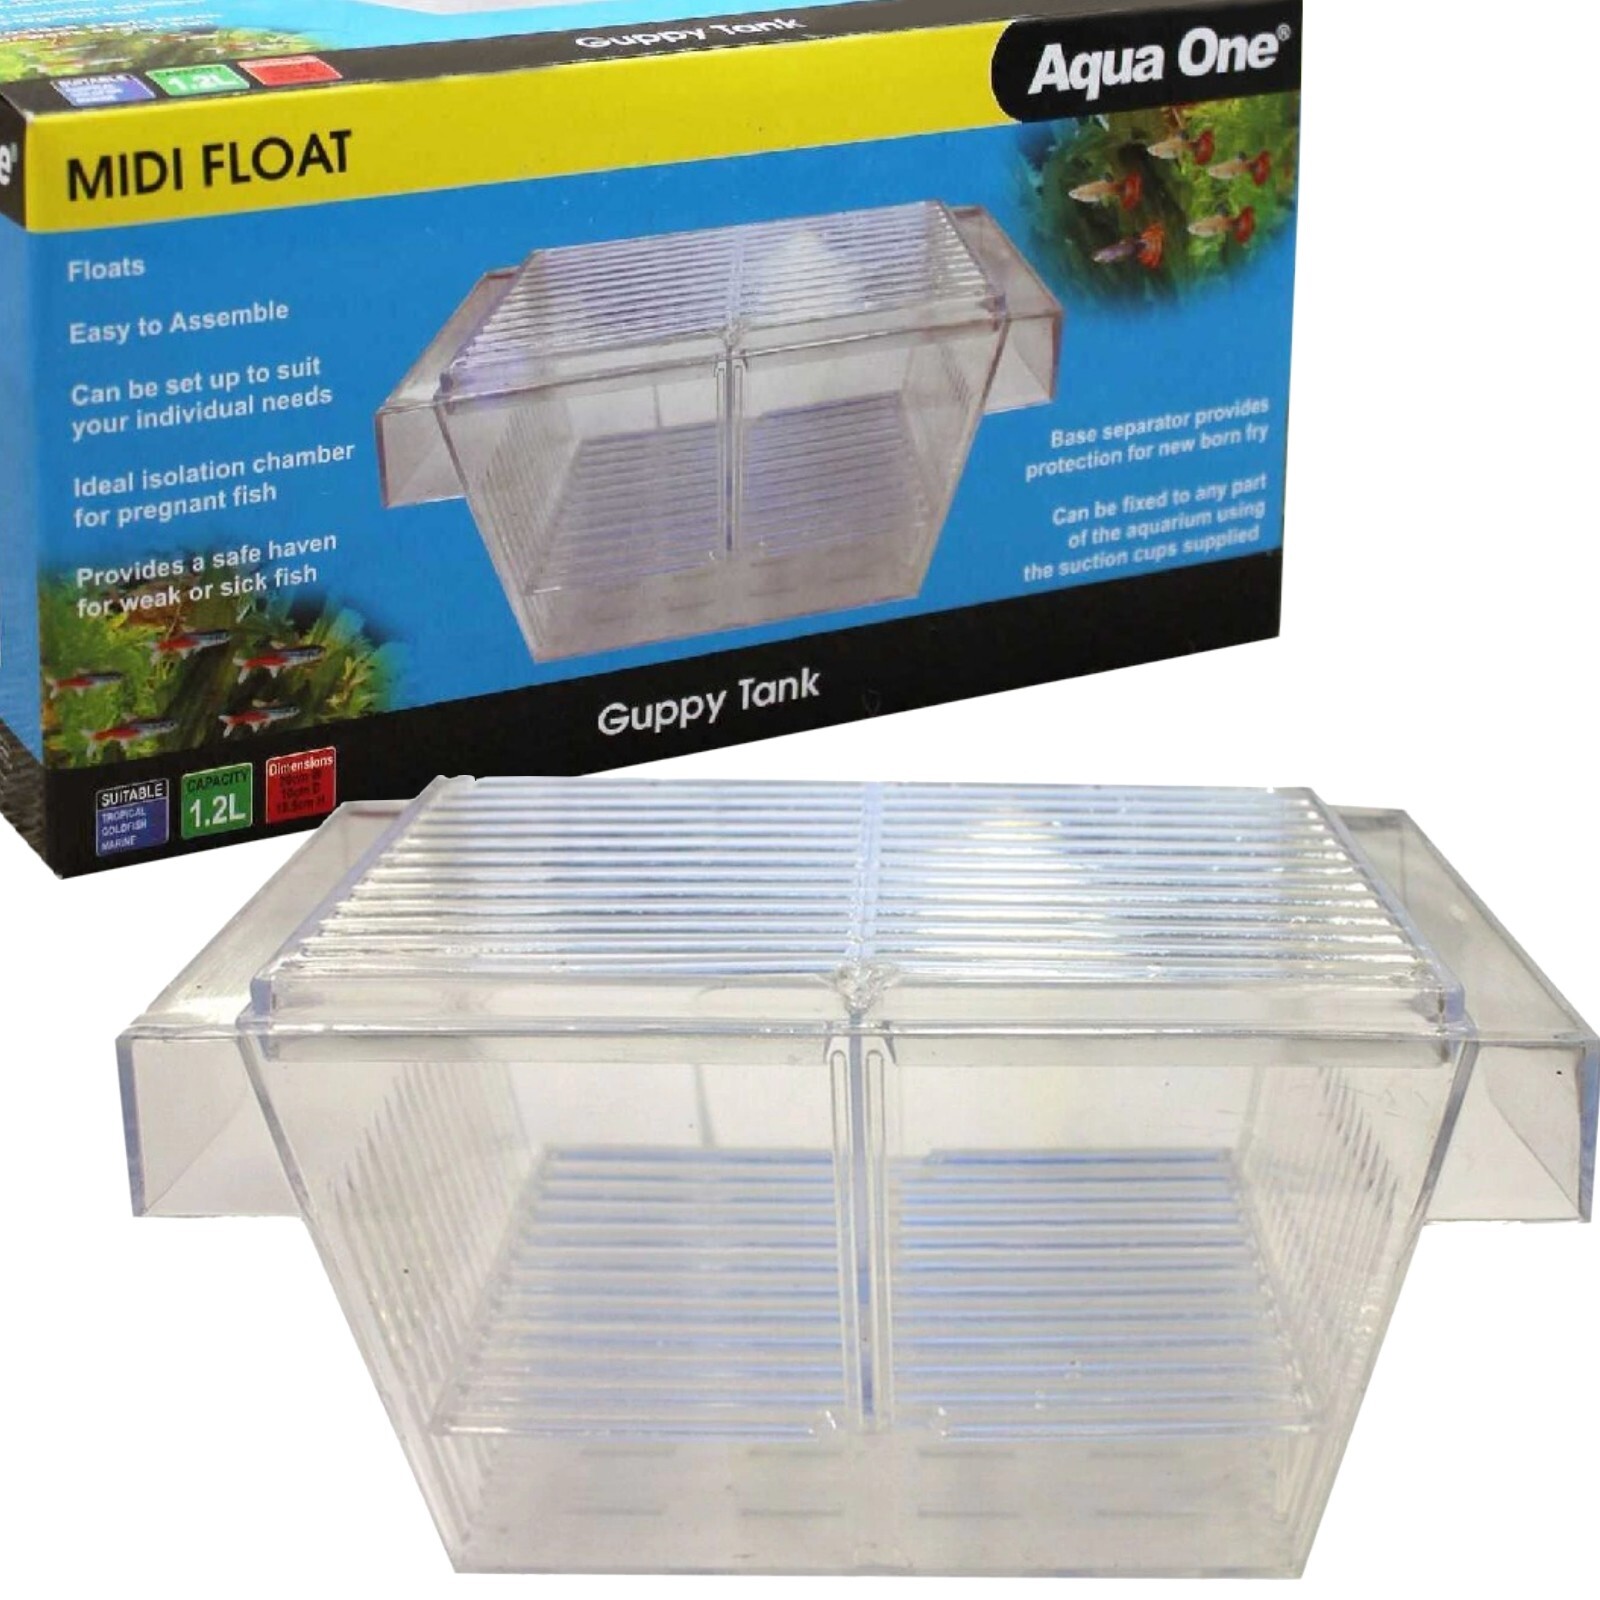 Aqua One MIDI Float Hatchery